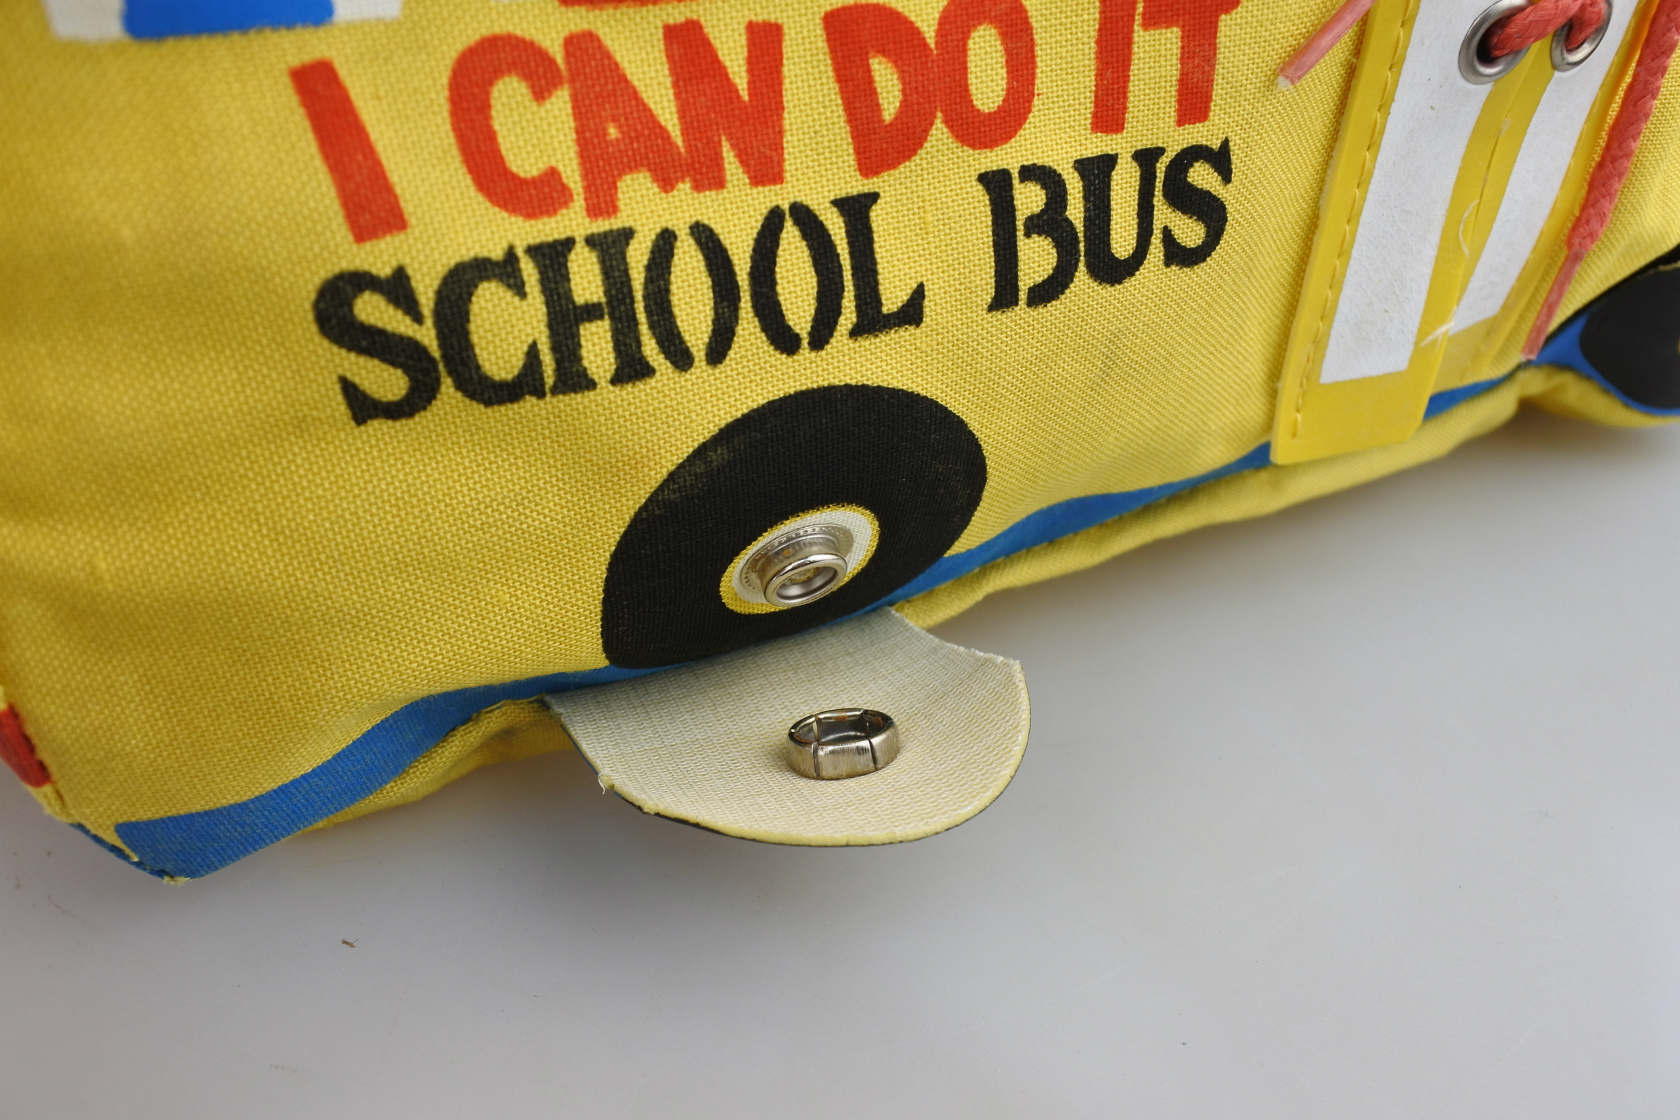 vi-schoolbus-bag